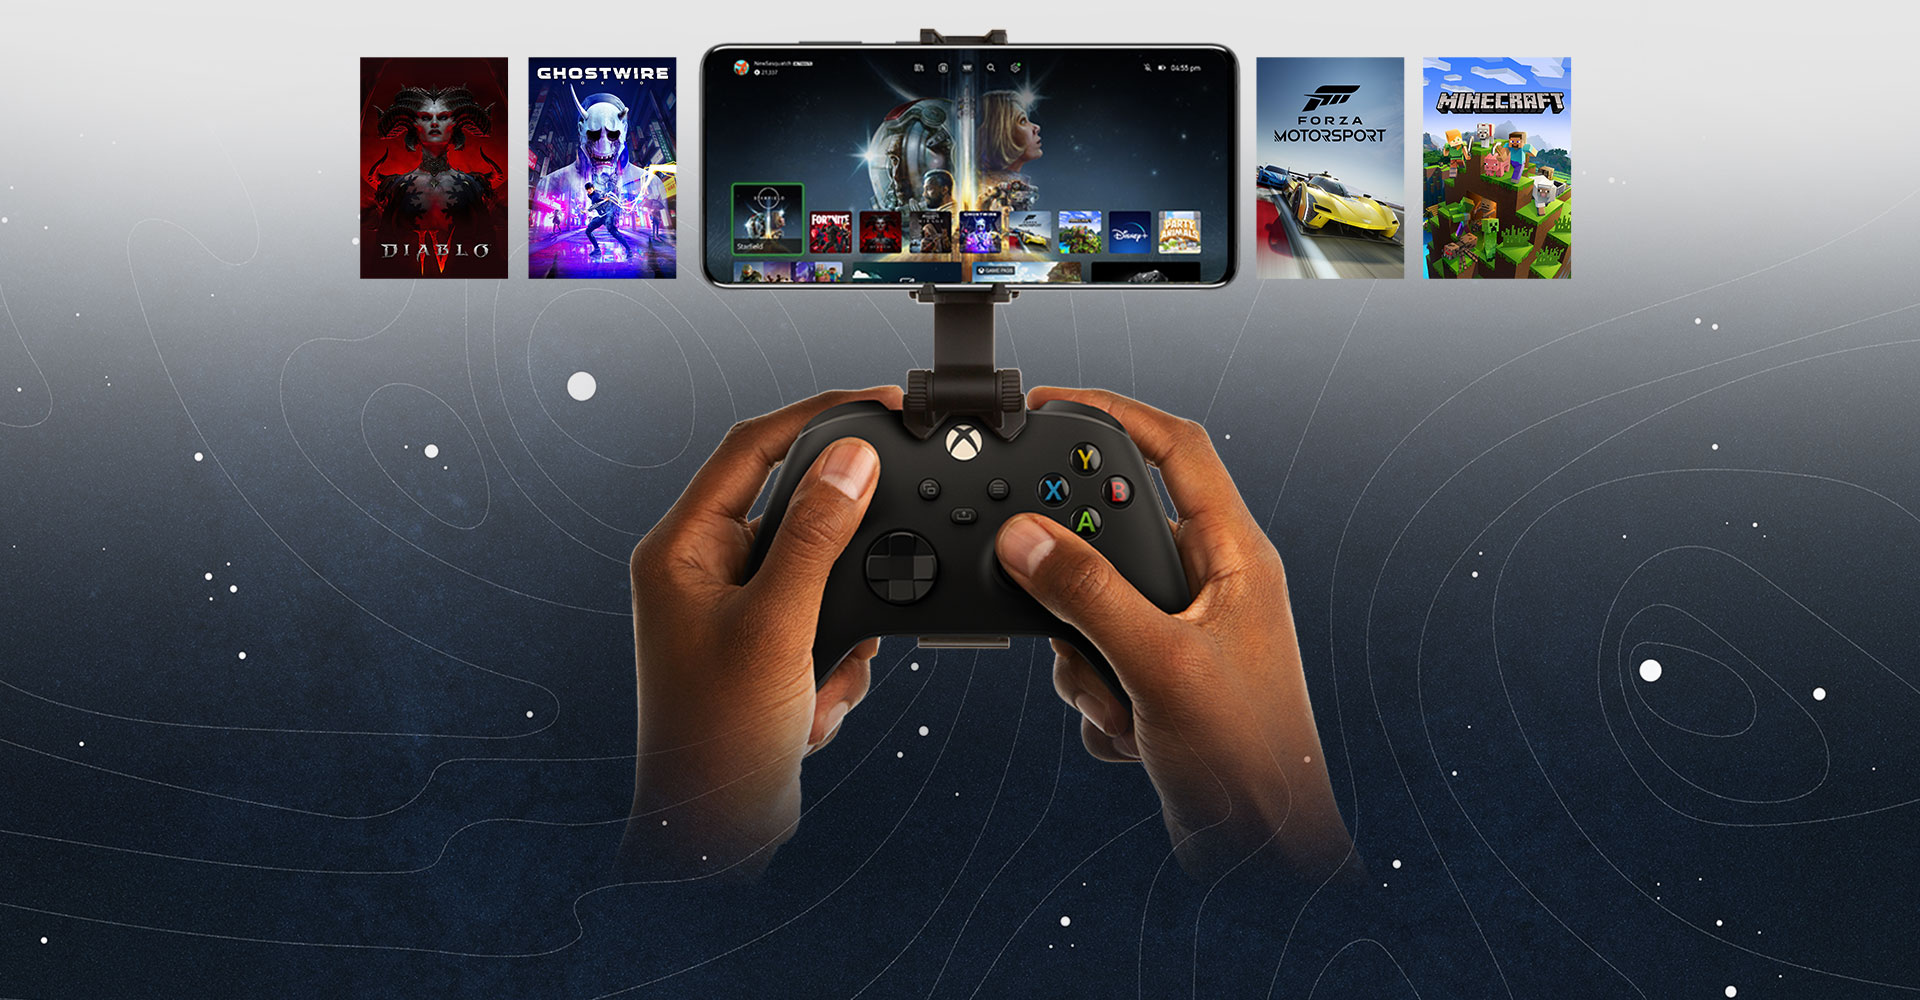 Un controller Xbox agganciato a un dispositivo mobile sul quale è visualizzata una selezione di titoli di gioco. Il mondo di Halo Infinite si estende oltre il telefono.